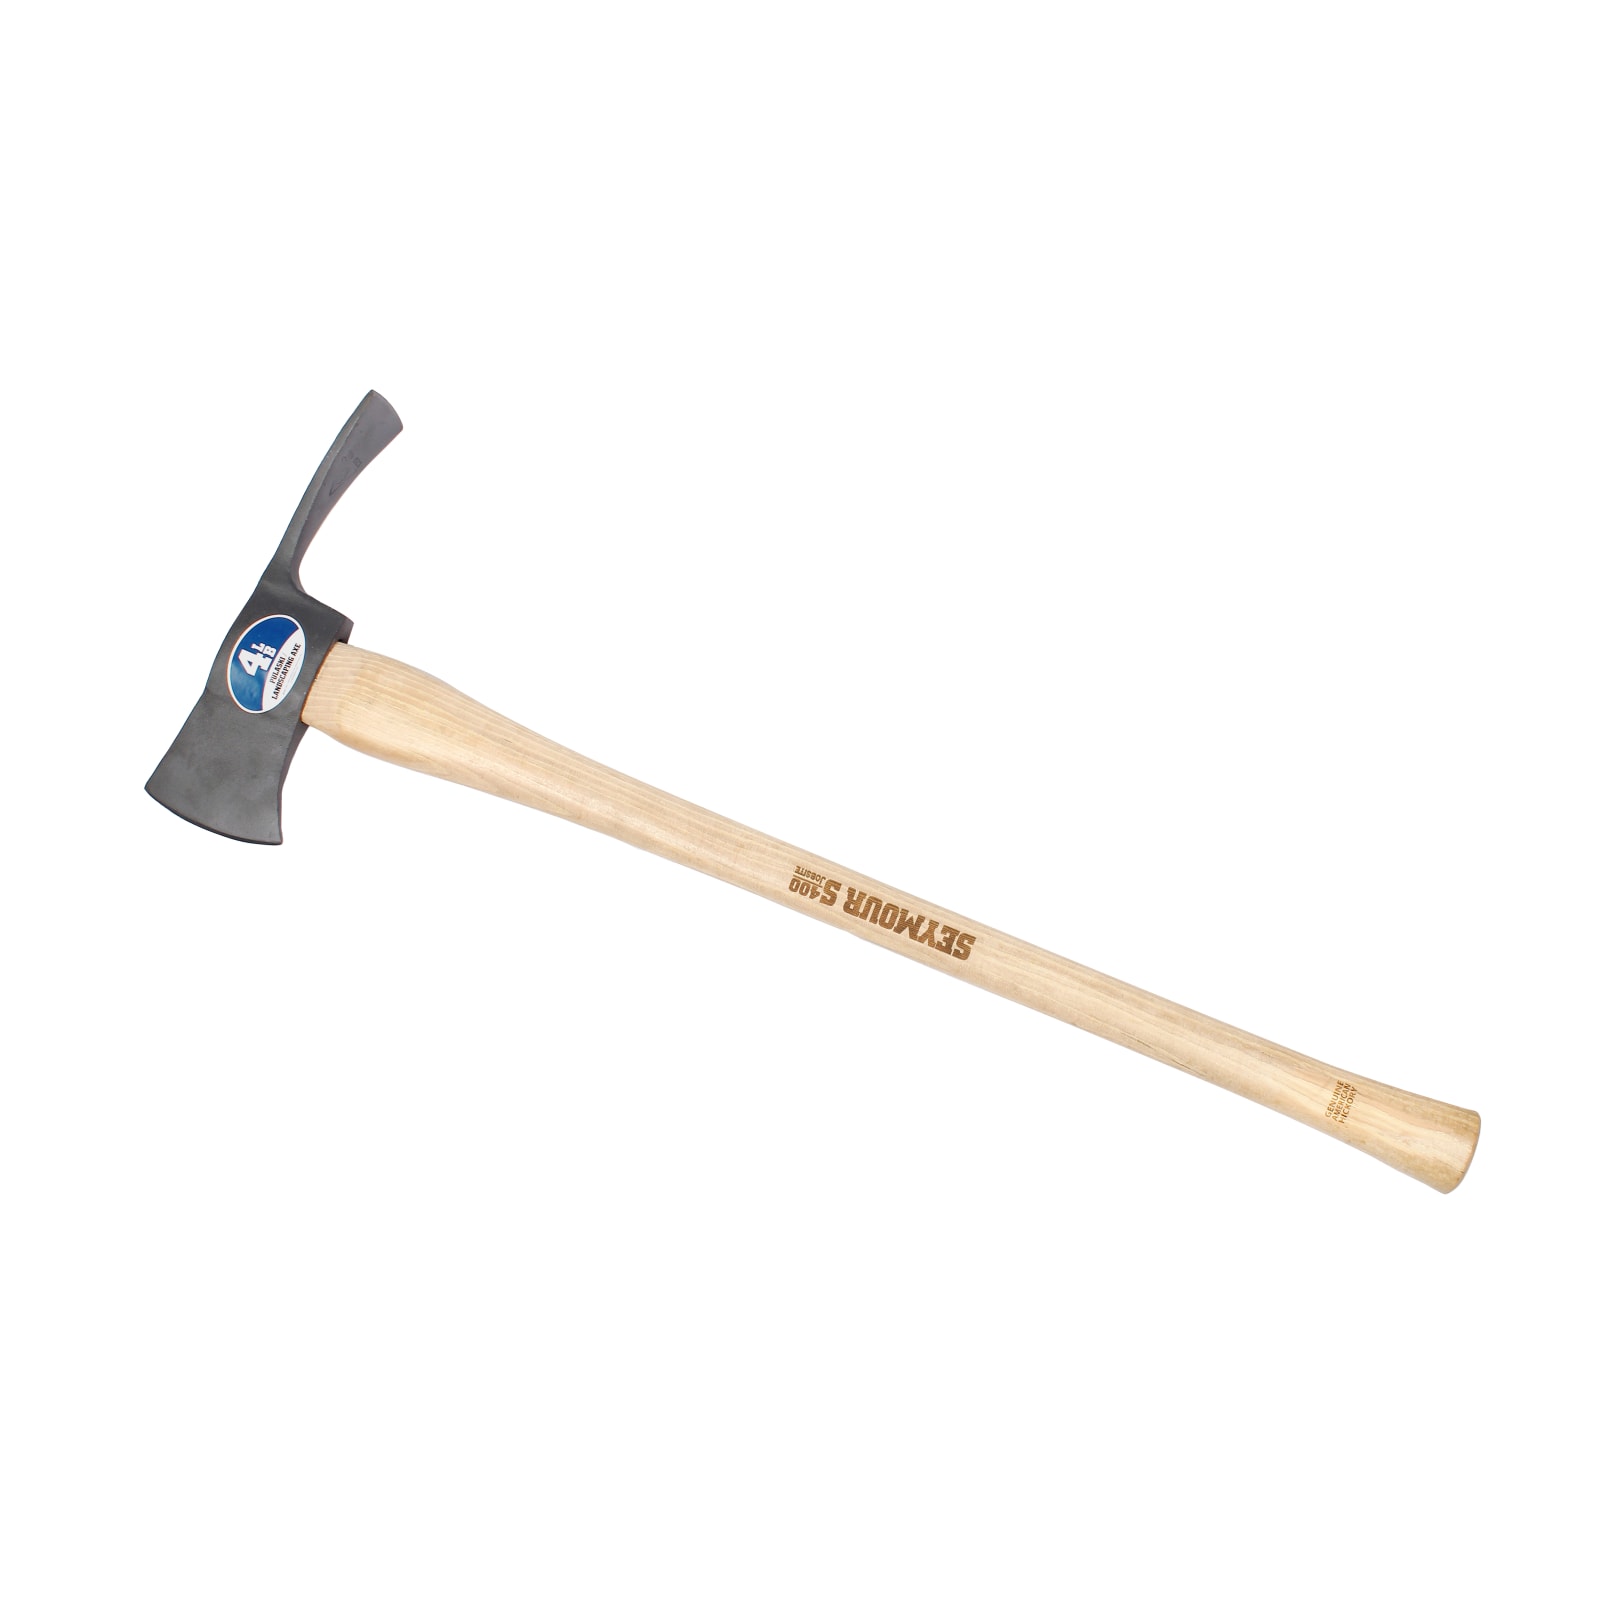  36 5 Lb Pick Mattock : Axes : Tools & Home Improvement